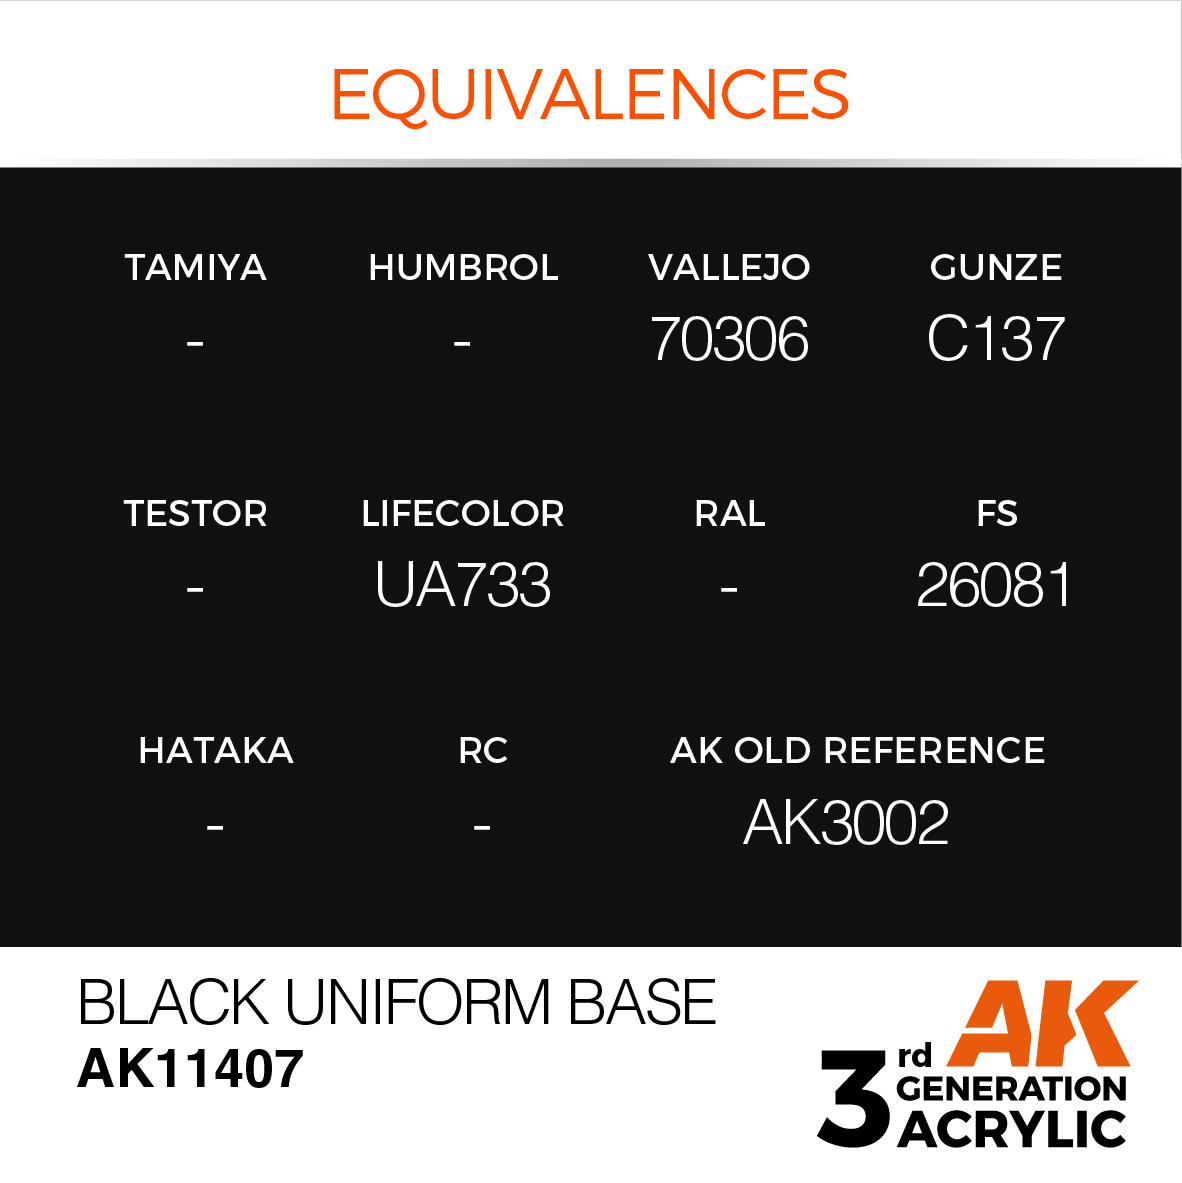 Black Uniform Base – Figures